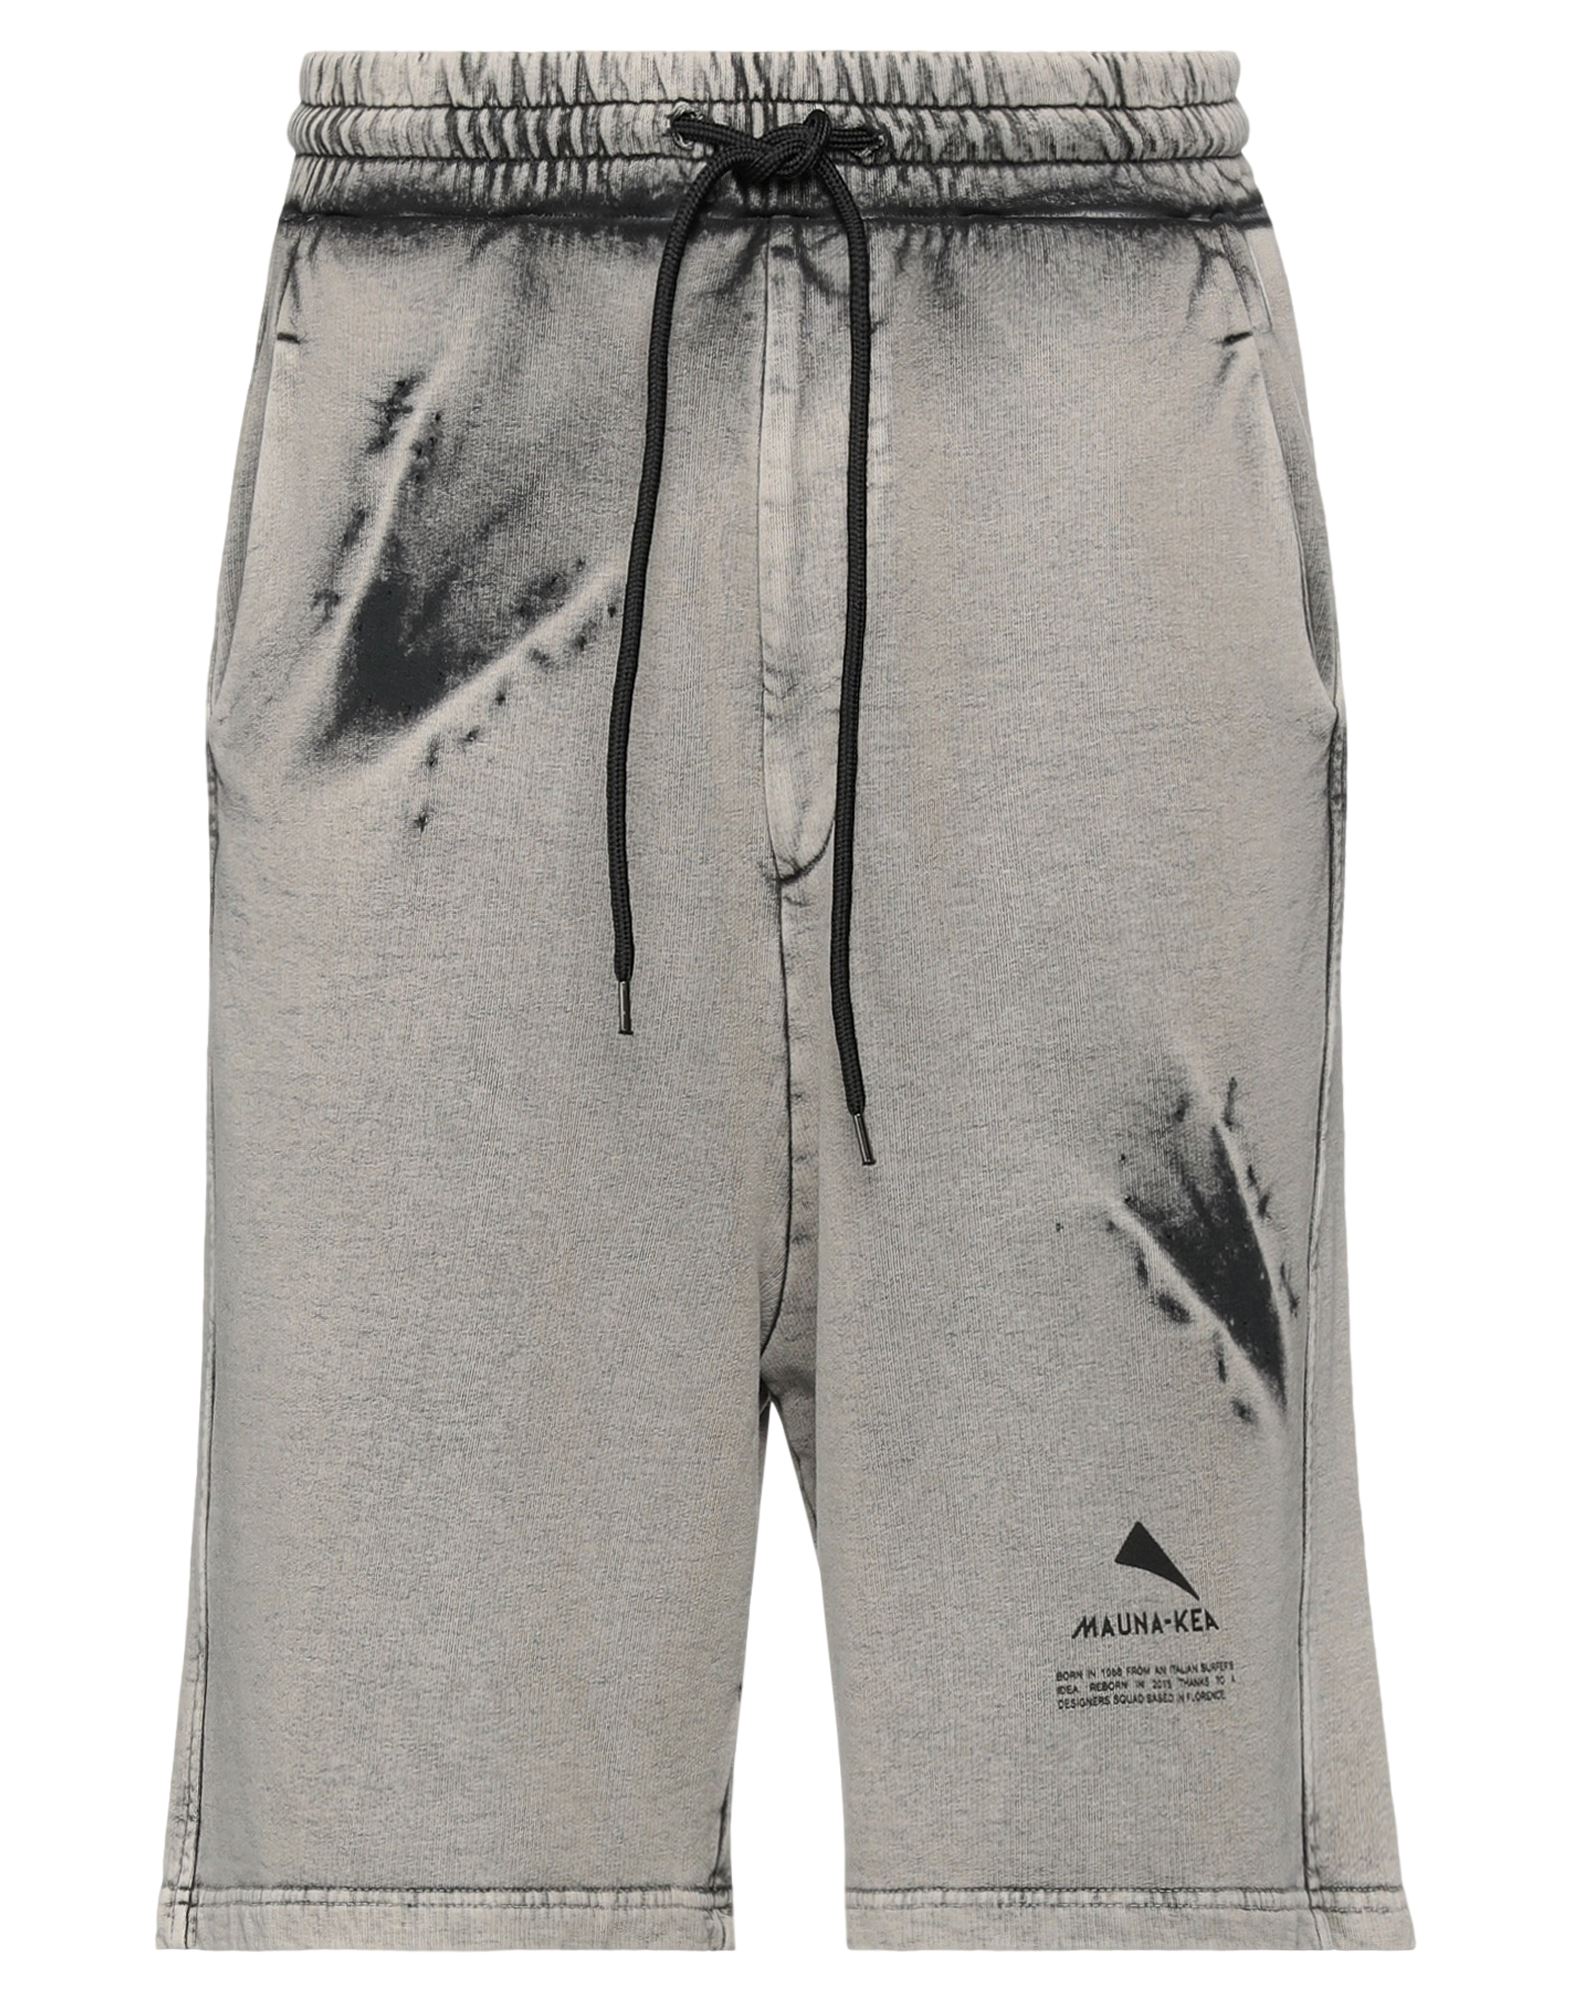 Mauna Kea Man Shorts & Bermuda Shorts Dove Grey Size Xl Cotton